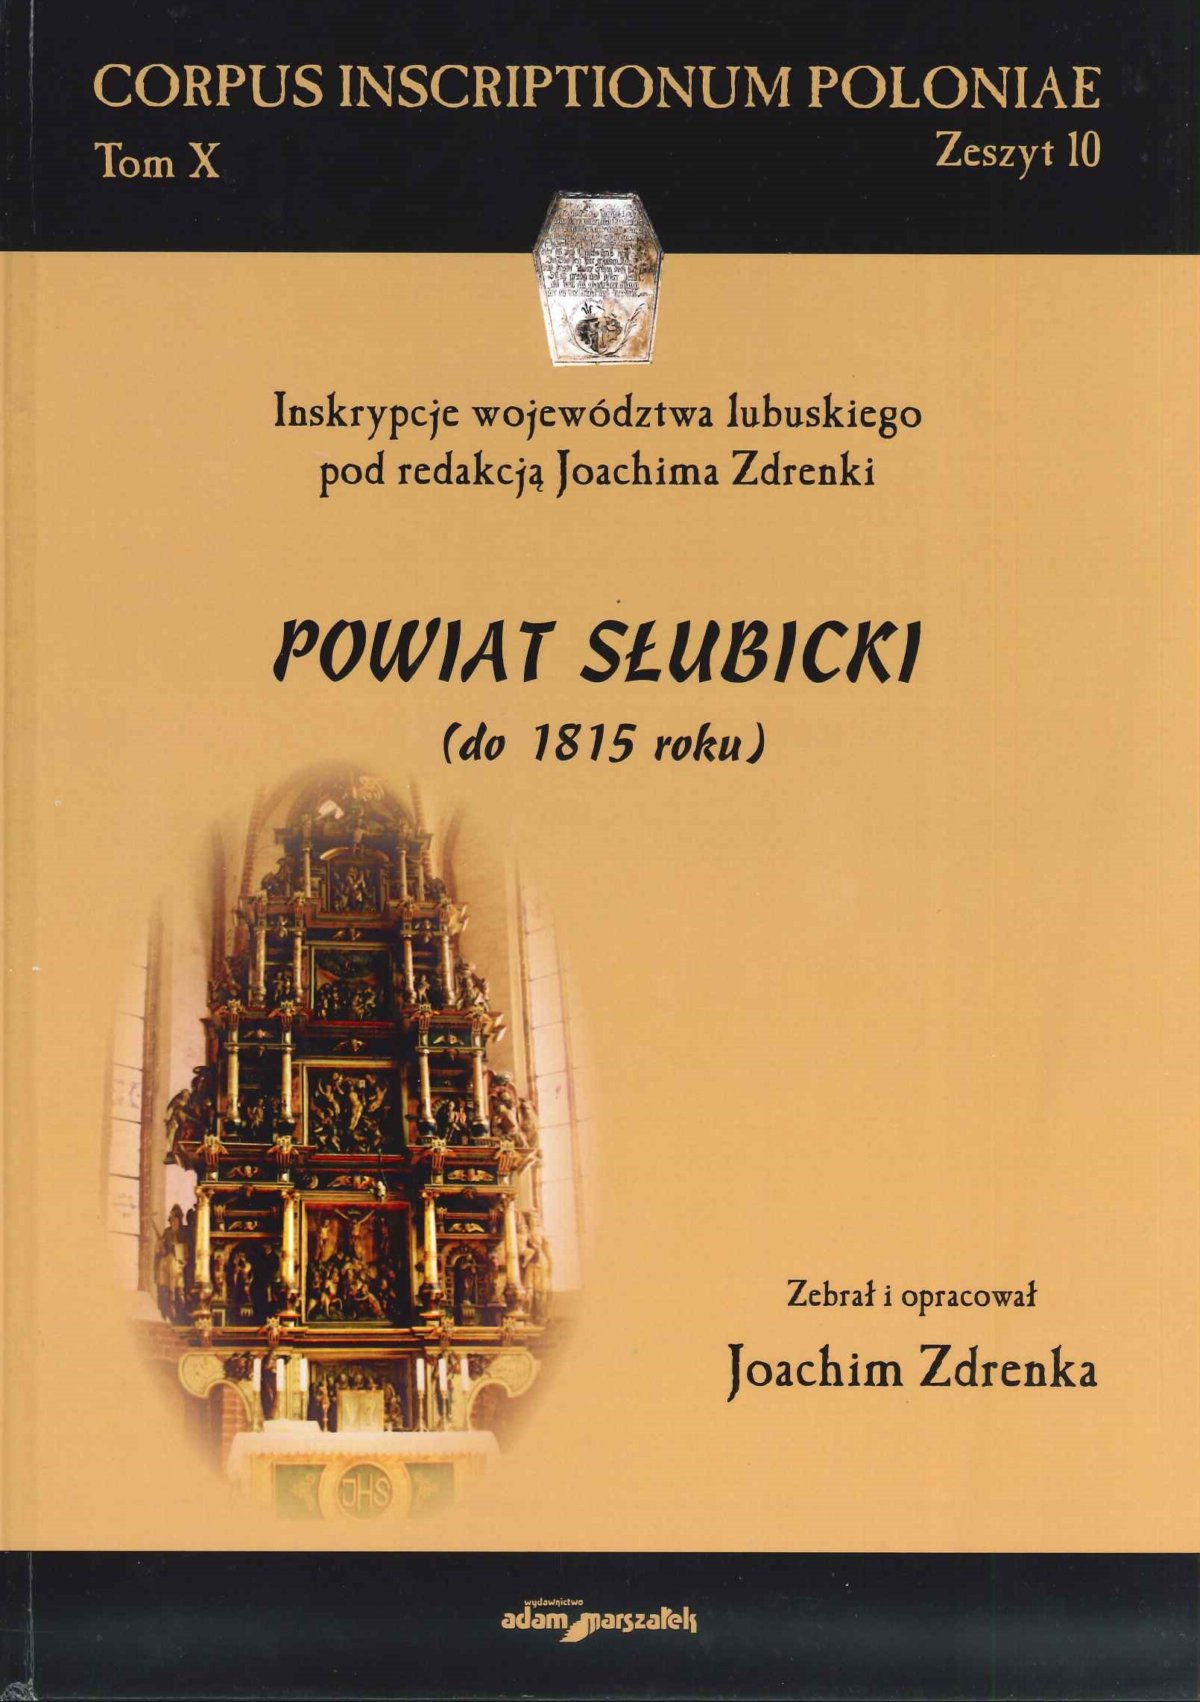 Zdrenka, Joachim: Powiat słubicki (do 1815 roku). - 2018. - Toruń : Wydawnictwo Adam Marszałek. - 239 stron : fotografie; 30 cm.